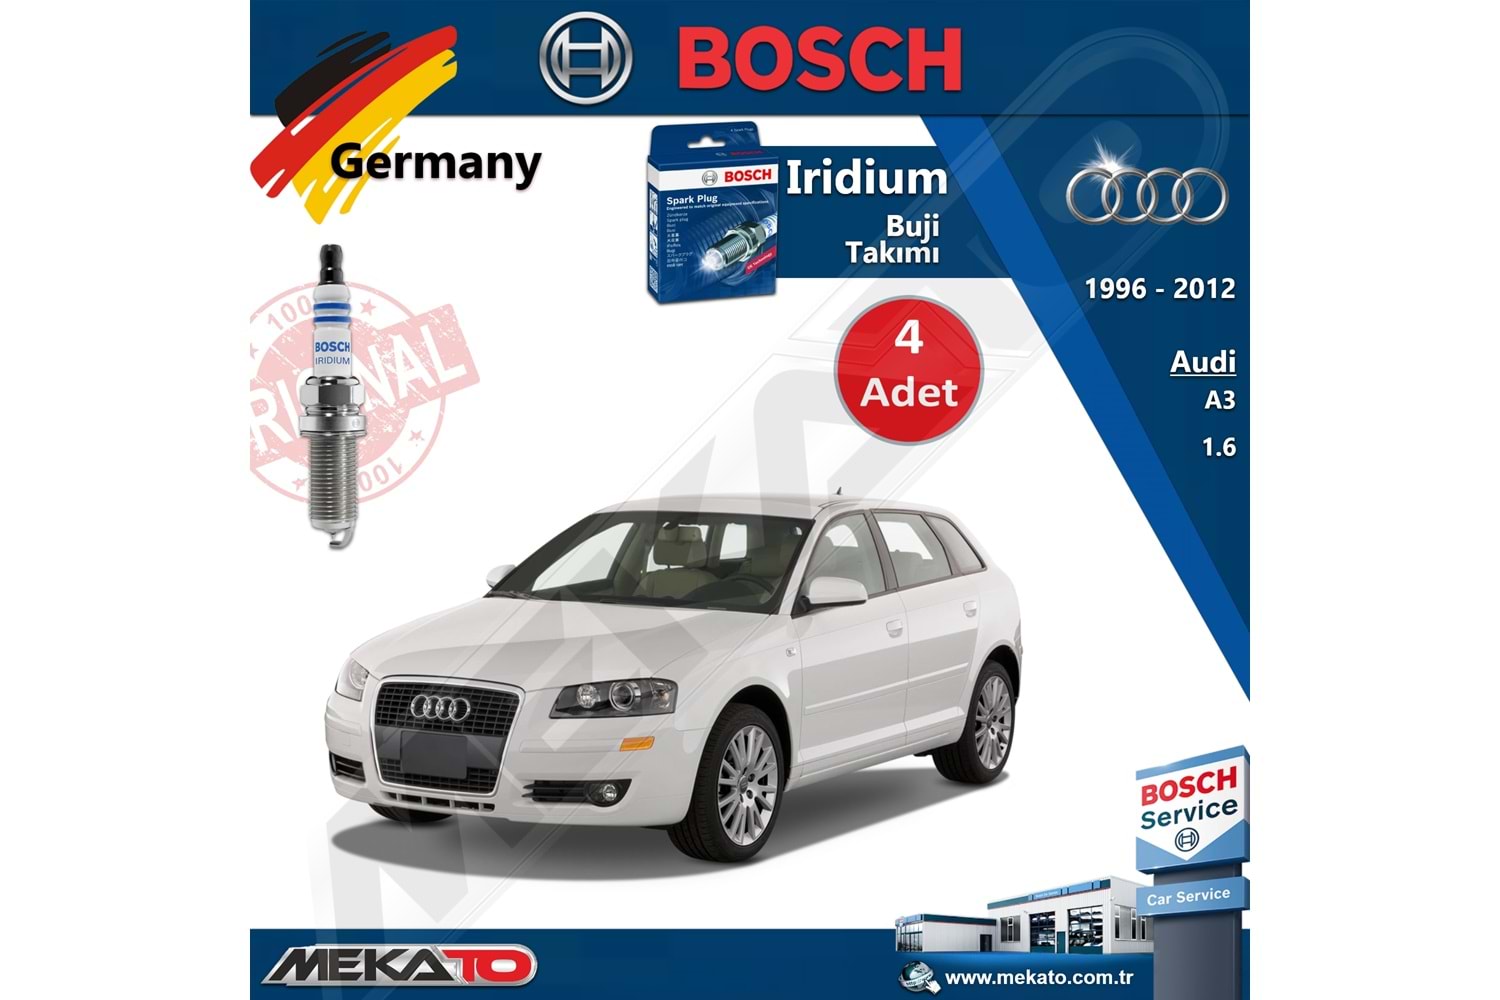 Audi A3 Lpg 1.6 Bosch İridyum Buji Takımı 4 Adet 1996-2012